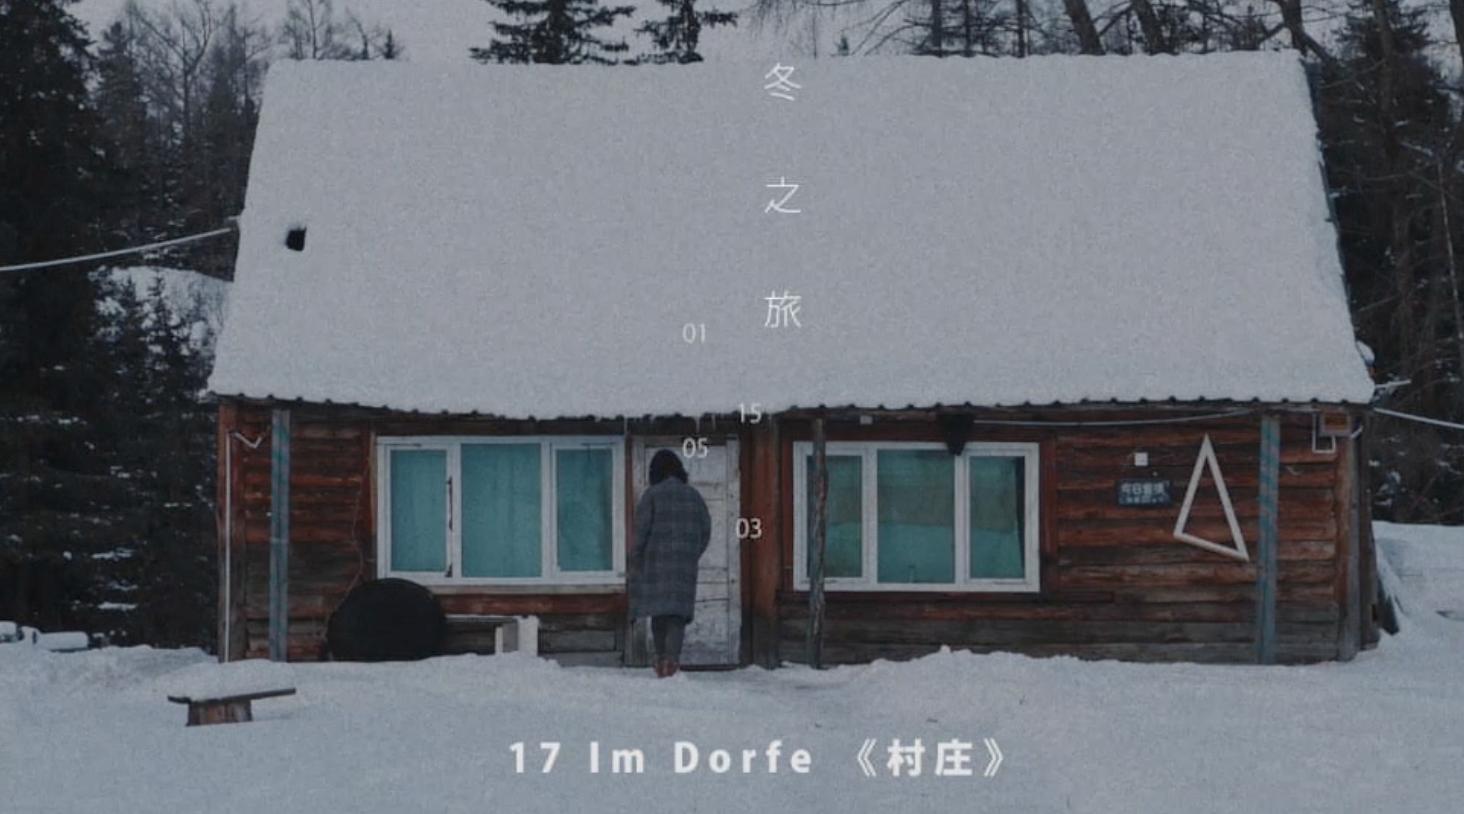 冬之旅  -  Im Dorfe 《村庄》Trailer 预告2